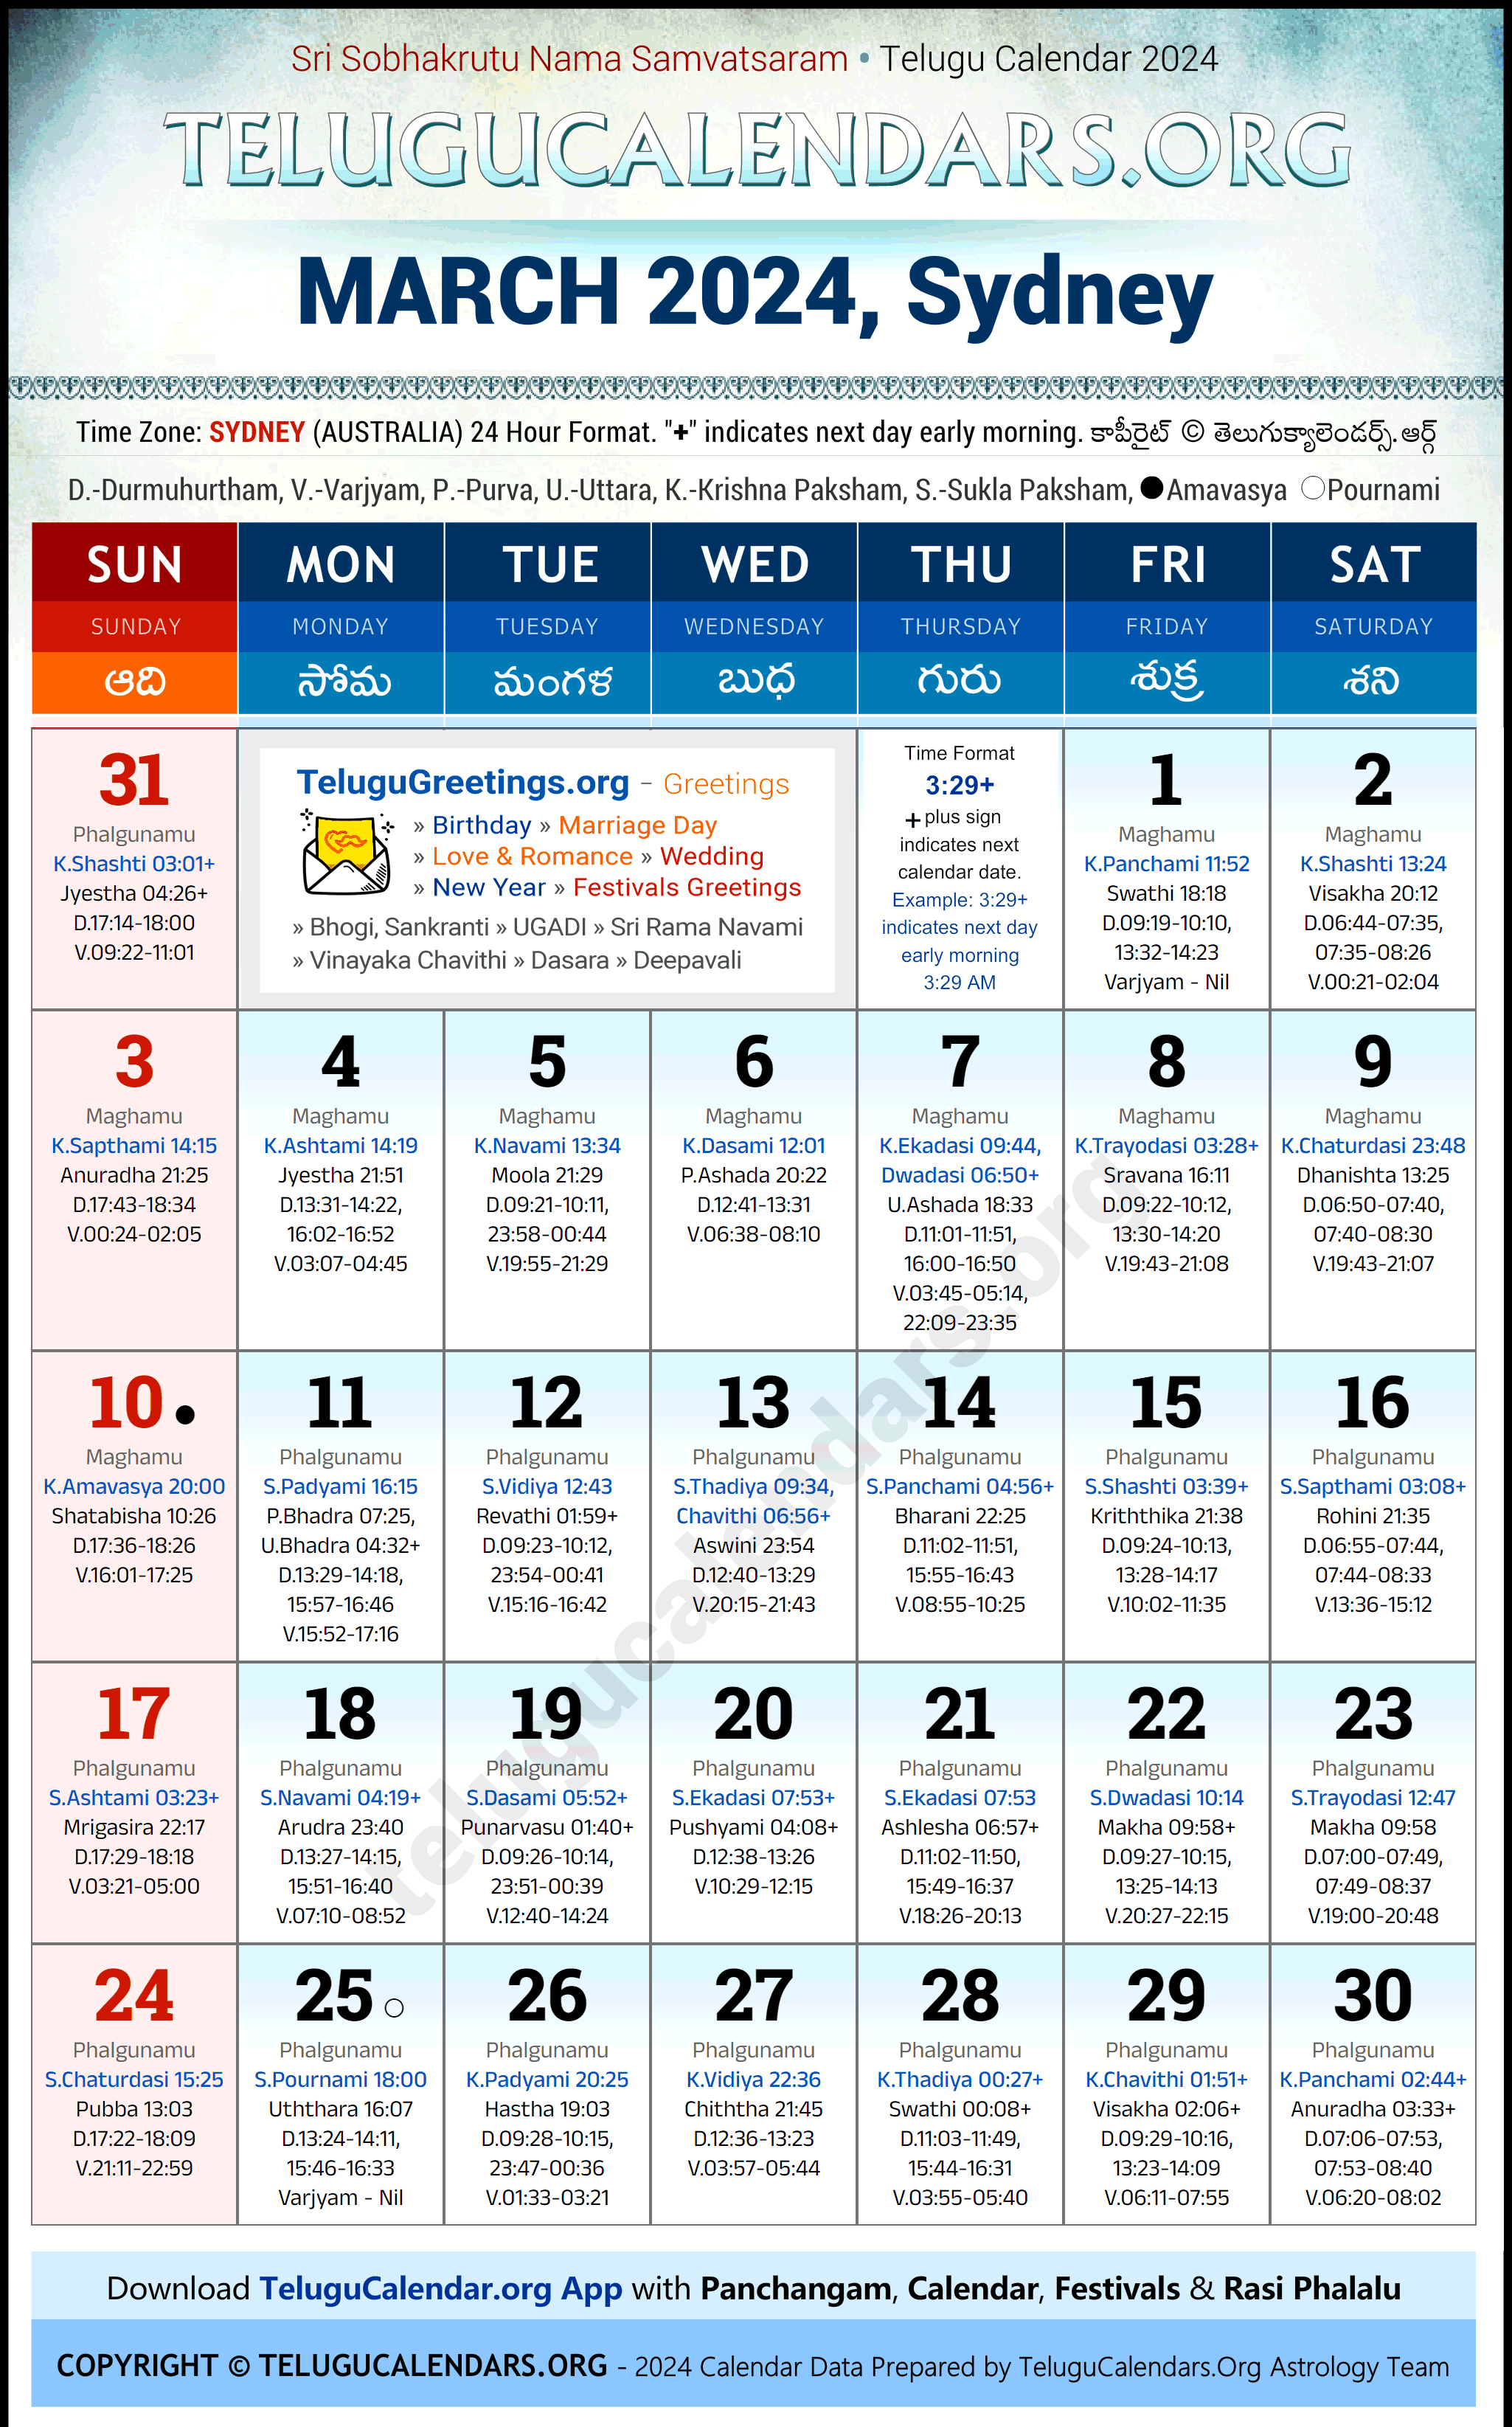 Telugu Calendar 2024 March Festivals for Sydney